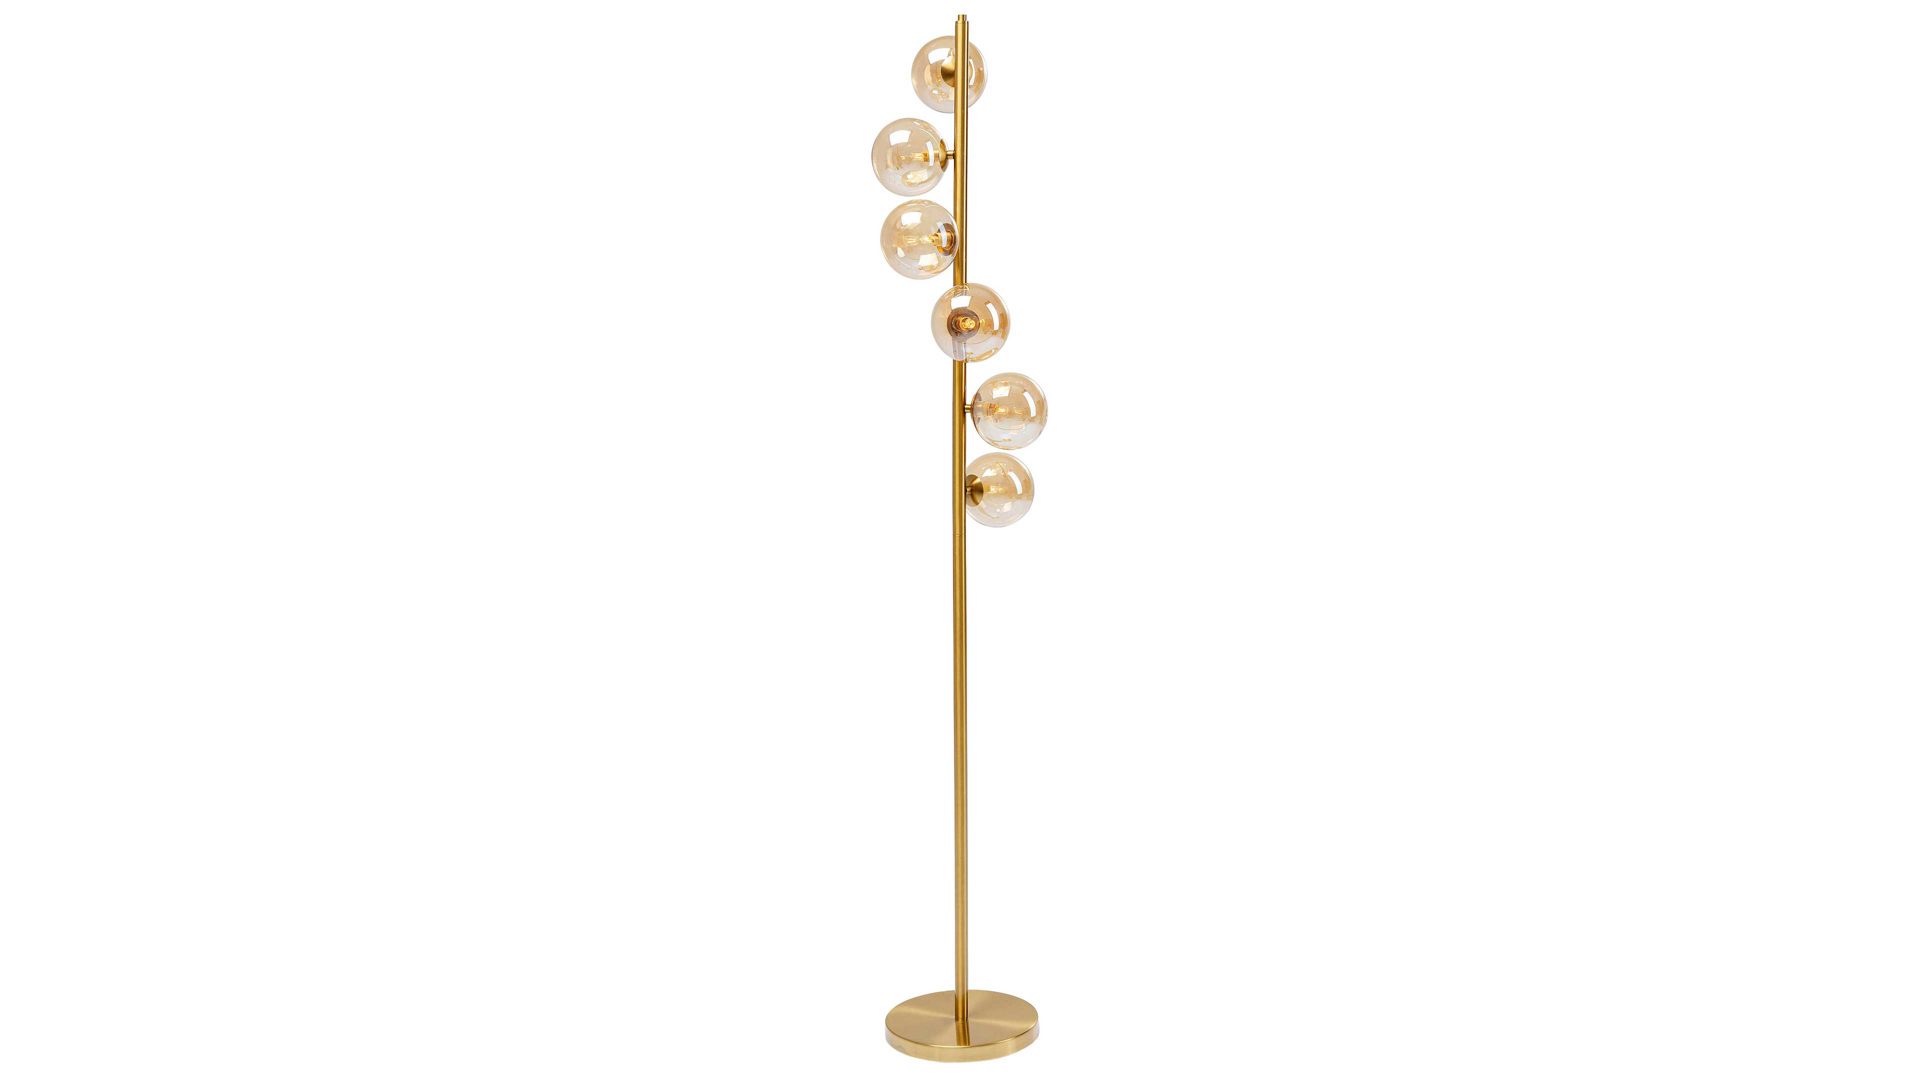 Stehleuchte Kare design aus Glas in Gold KARE DESIGN Stehleuchte Scala Balls goldfarbenes Metall - Höhe ca. 160 cm